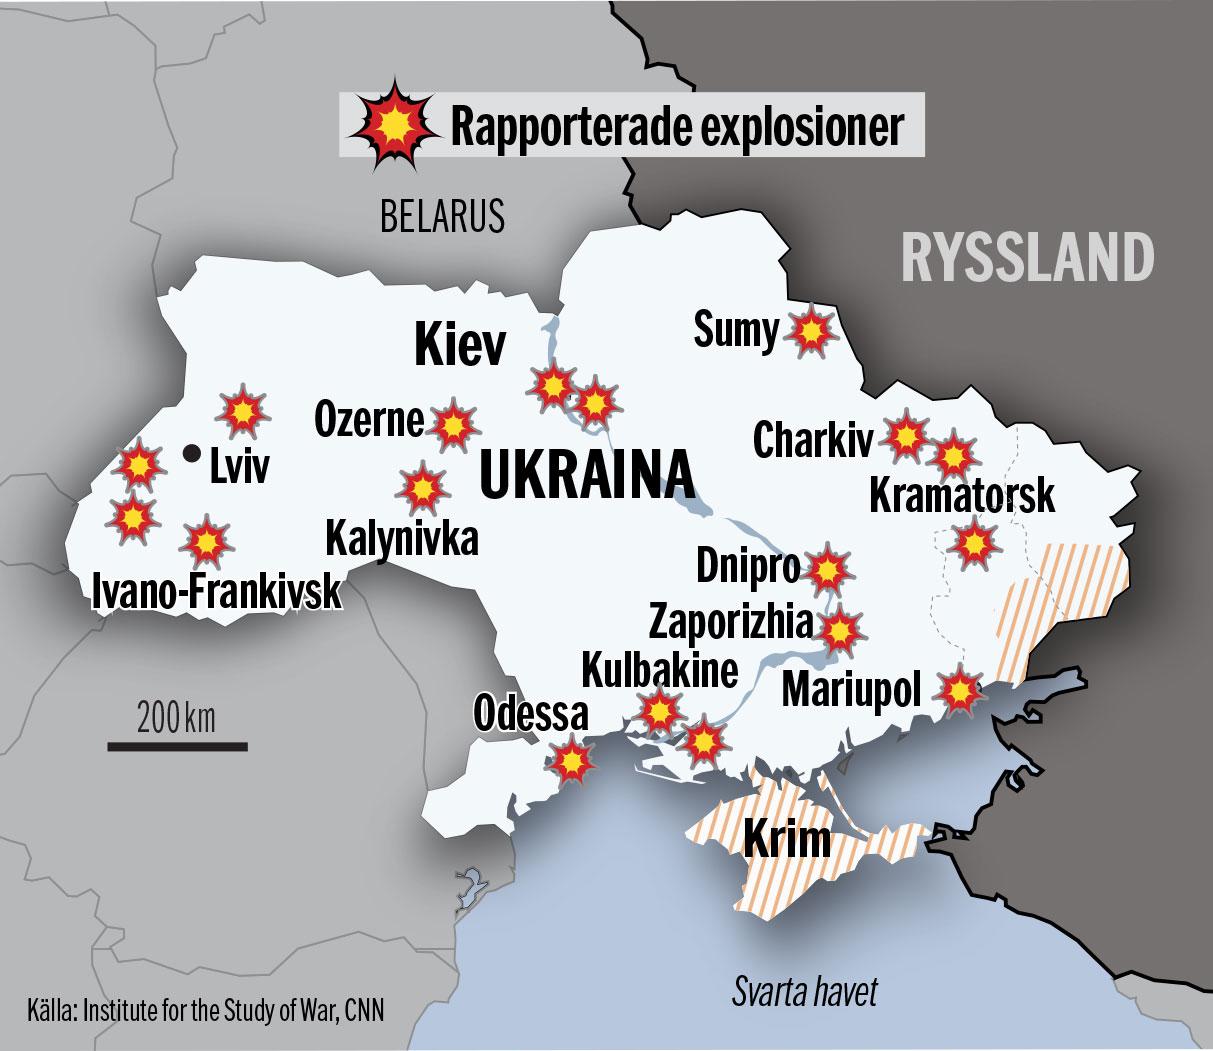 Explosioner har bekräftats i bland annat Charkiv och Dnipro. 